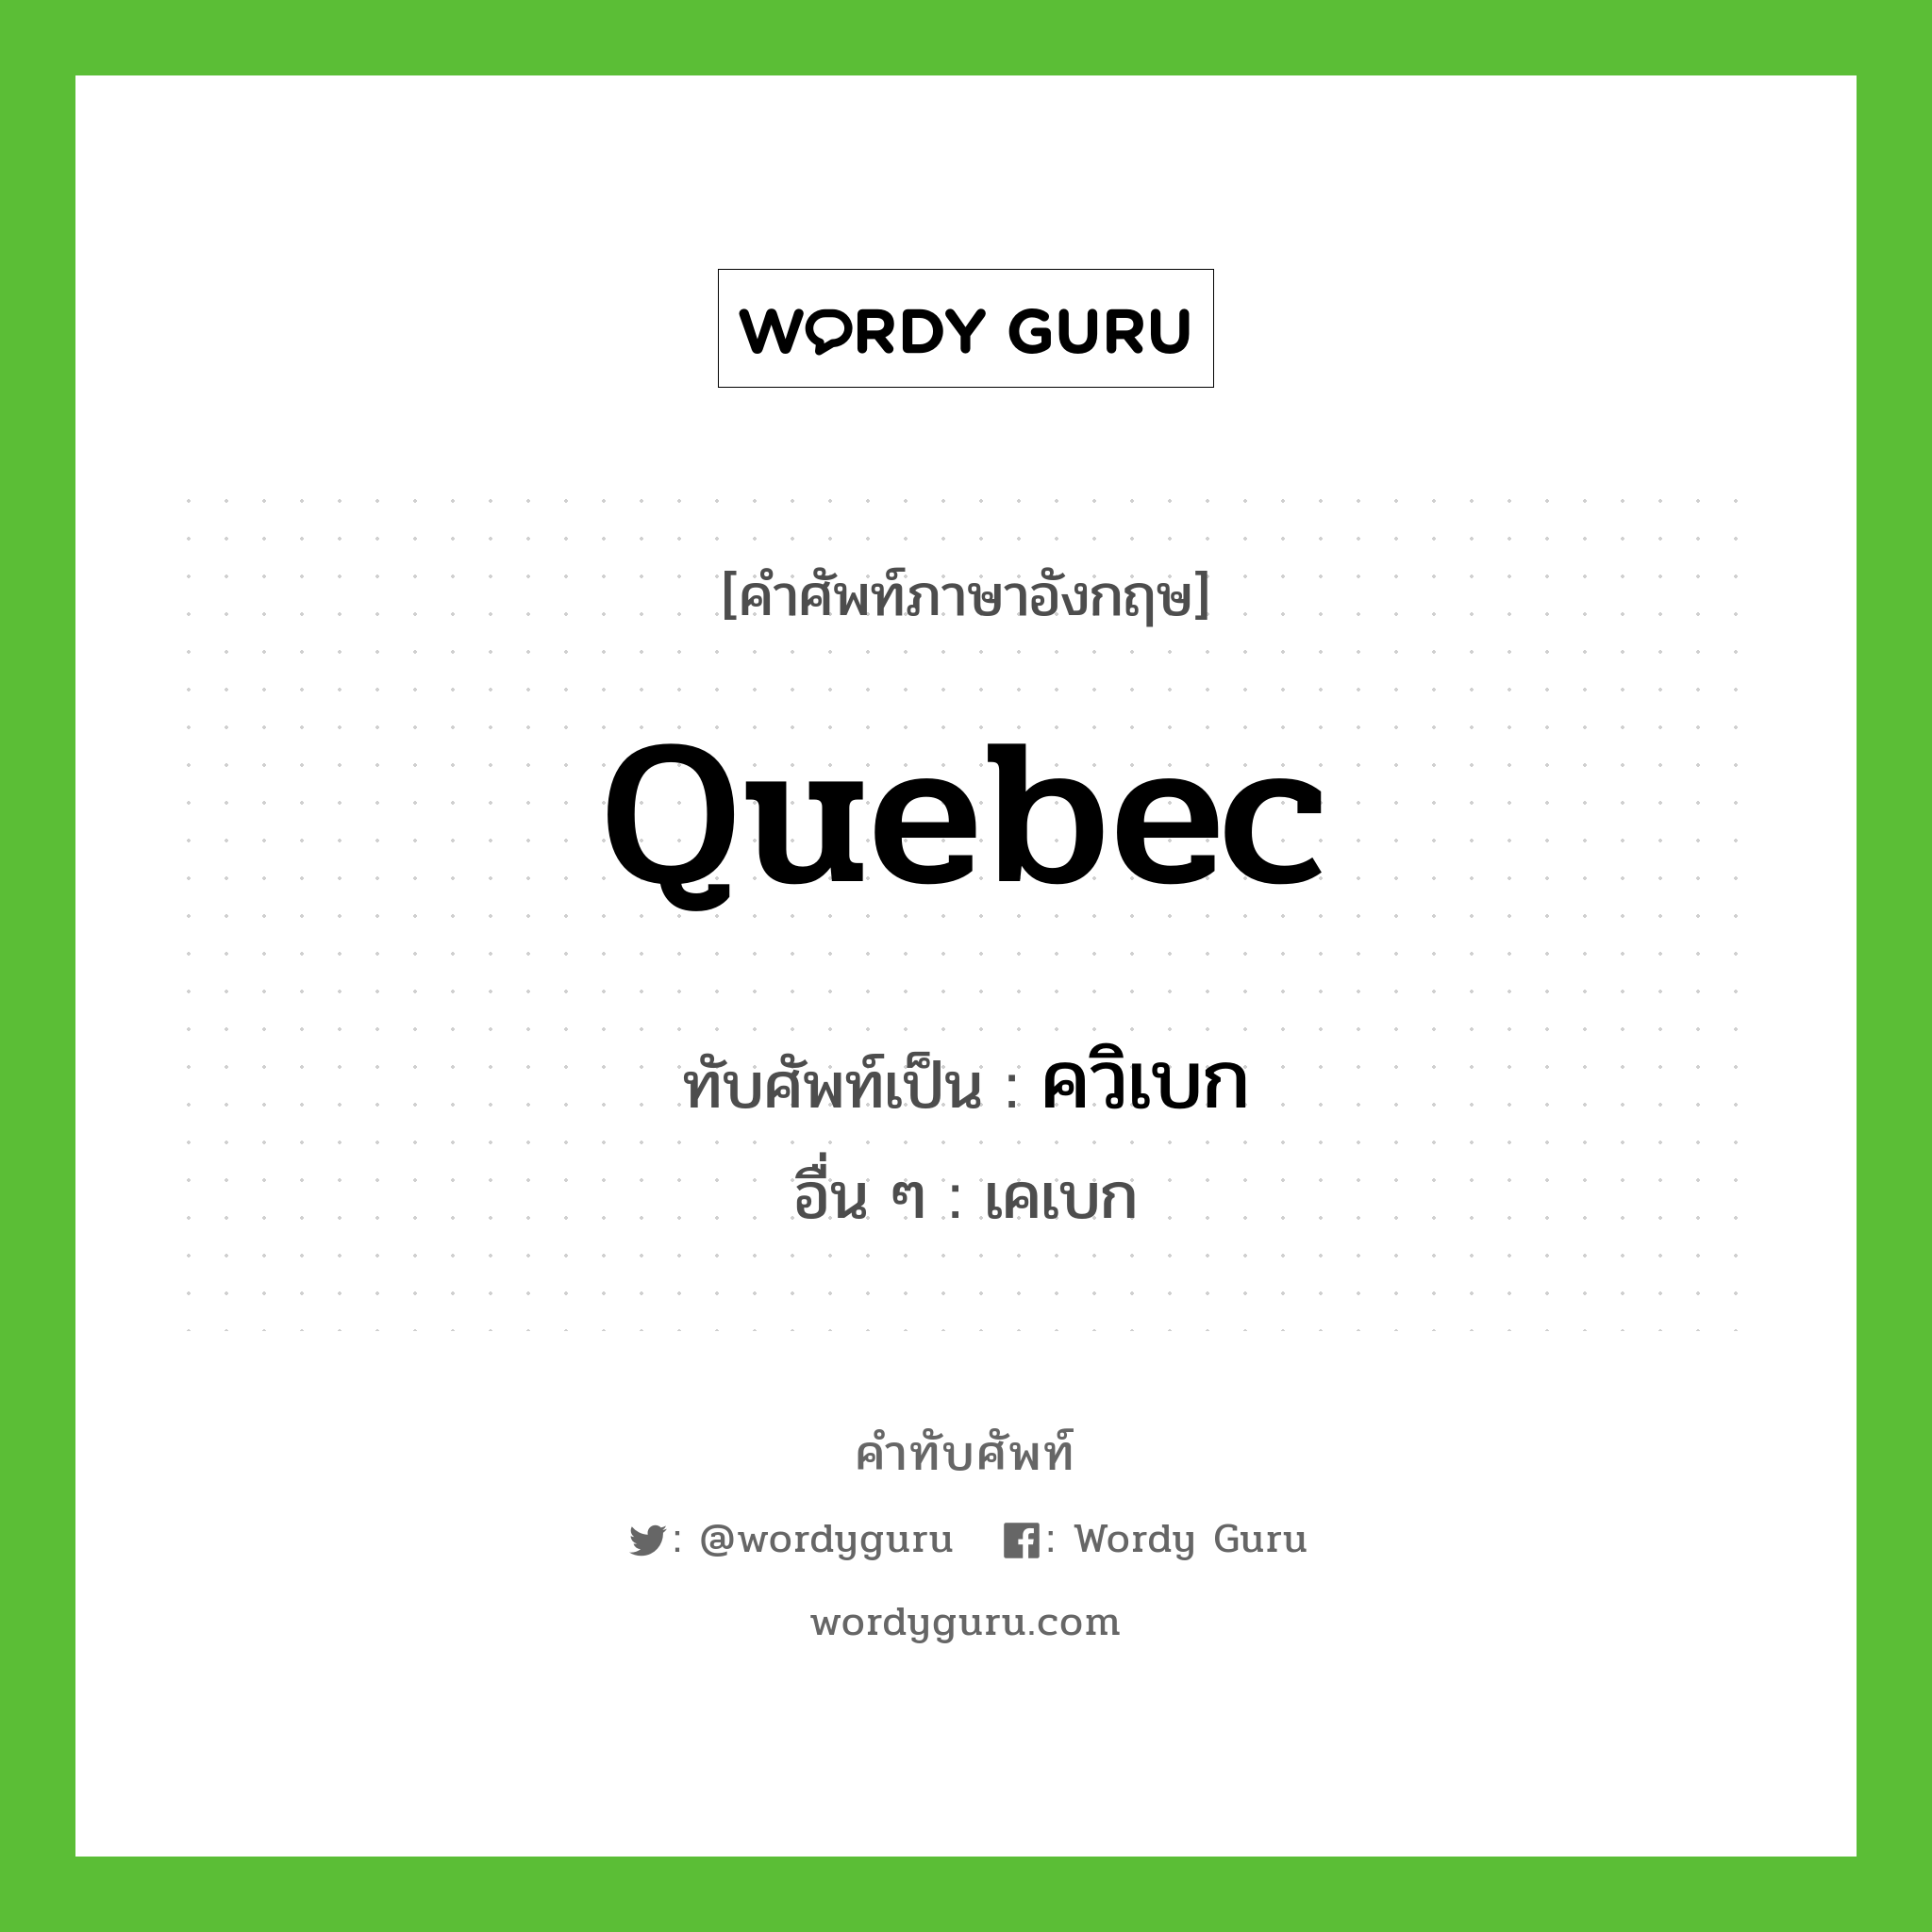 Quebec เขียนเป็นคำไทยว่าอะไร?, คำศัพท์ภาษาอังกฤษ Quebec ทับศัพท์เป็น ควิเบก อื่น ๆ เคเบก